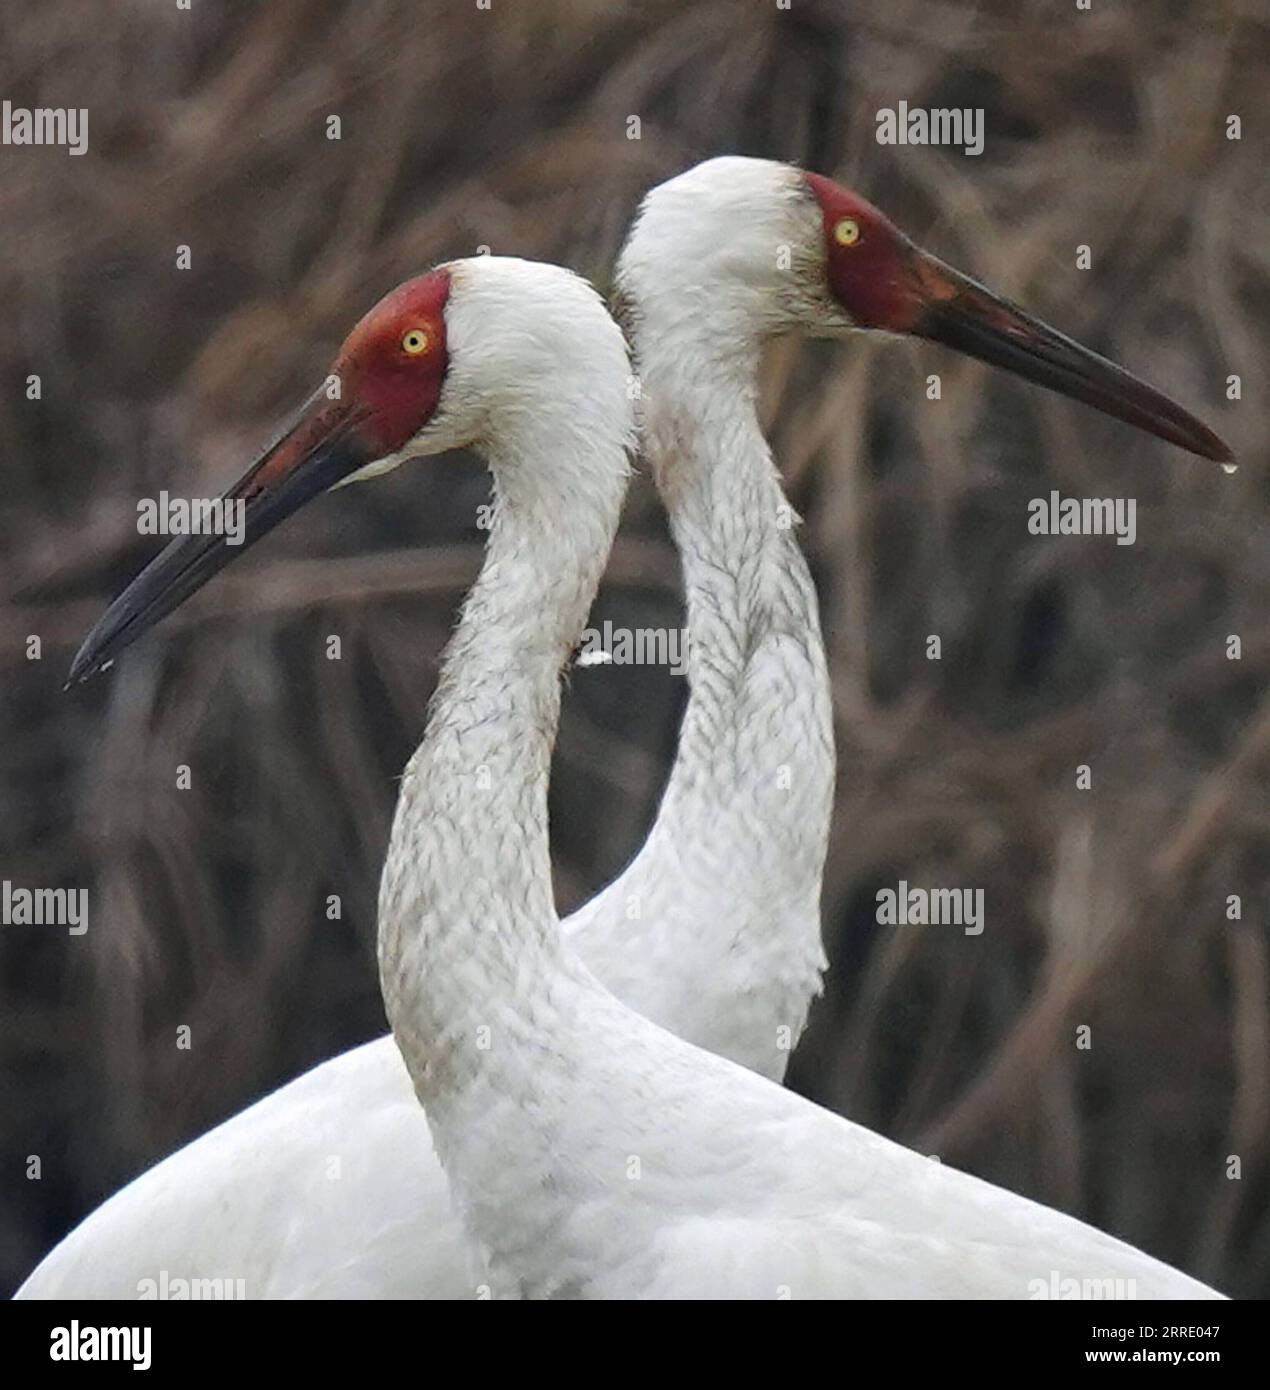 220115 -- NANCHANG, 15. Januar 2022 -- Weiße Kraniche werden im Nanchang Five Stars Siberian Cranes Sanctuary am Poyang Lake in Nanchang, Ostchinesische Provinz Jiangxi, 12. Januar 2022 gesehen. Der Poyang Lake, der größte Süßwassersee des Landes, ist ein wichtiger Überwinterungsort für Zugvögel. Um die Futtervorräte für die Vögel zu erhöhen, erließ die lokale Regierung des Yugan County 2021 eine Entschädigungspolitik für Landwirte und reservierte Reis für Zugvögel. Im fünf-Sterne-Sibirischen Kranichheiligtum Nanchang am Poyang-See wurden Kraniche auf einem Lotussee zum Essen angezogen. Der Teich, ini Stockfoto